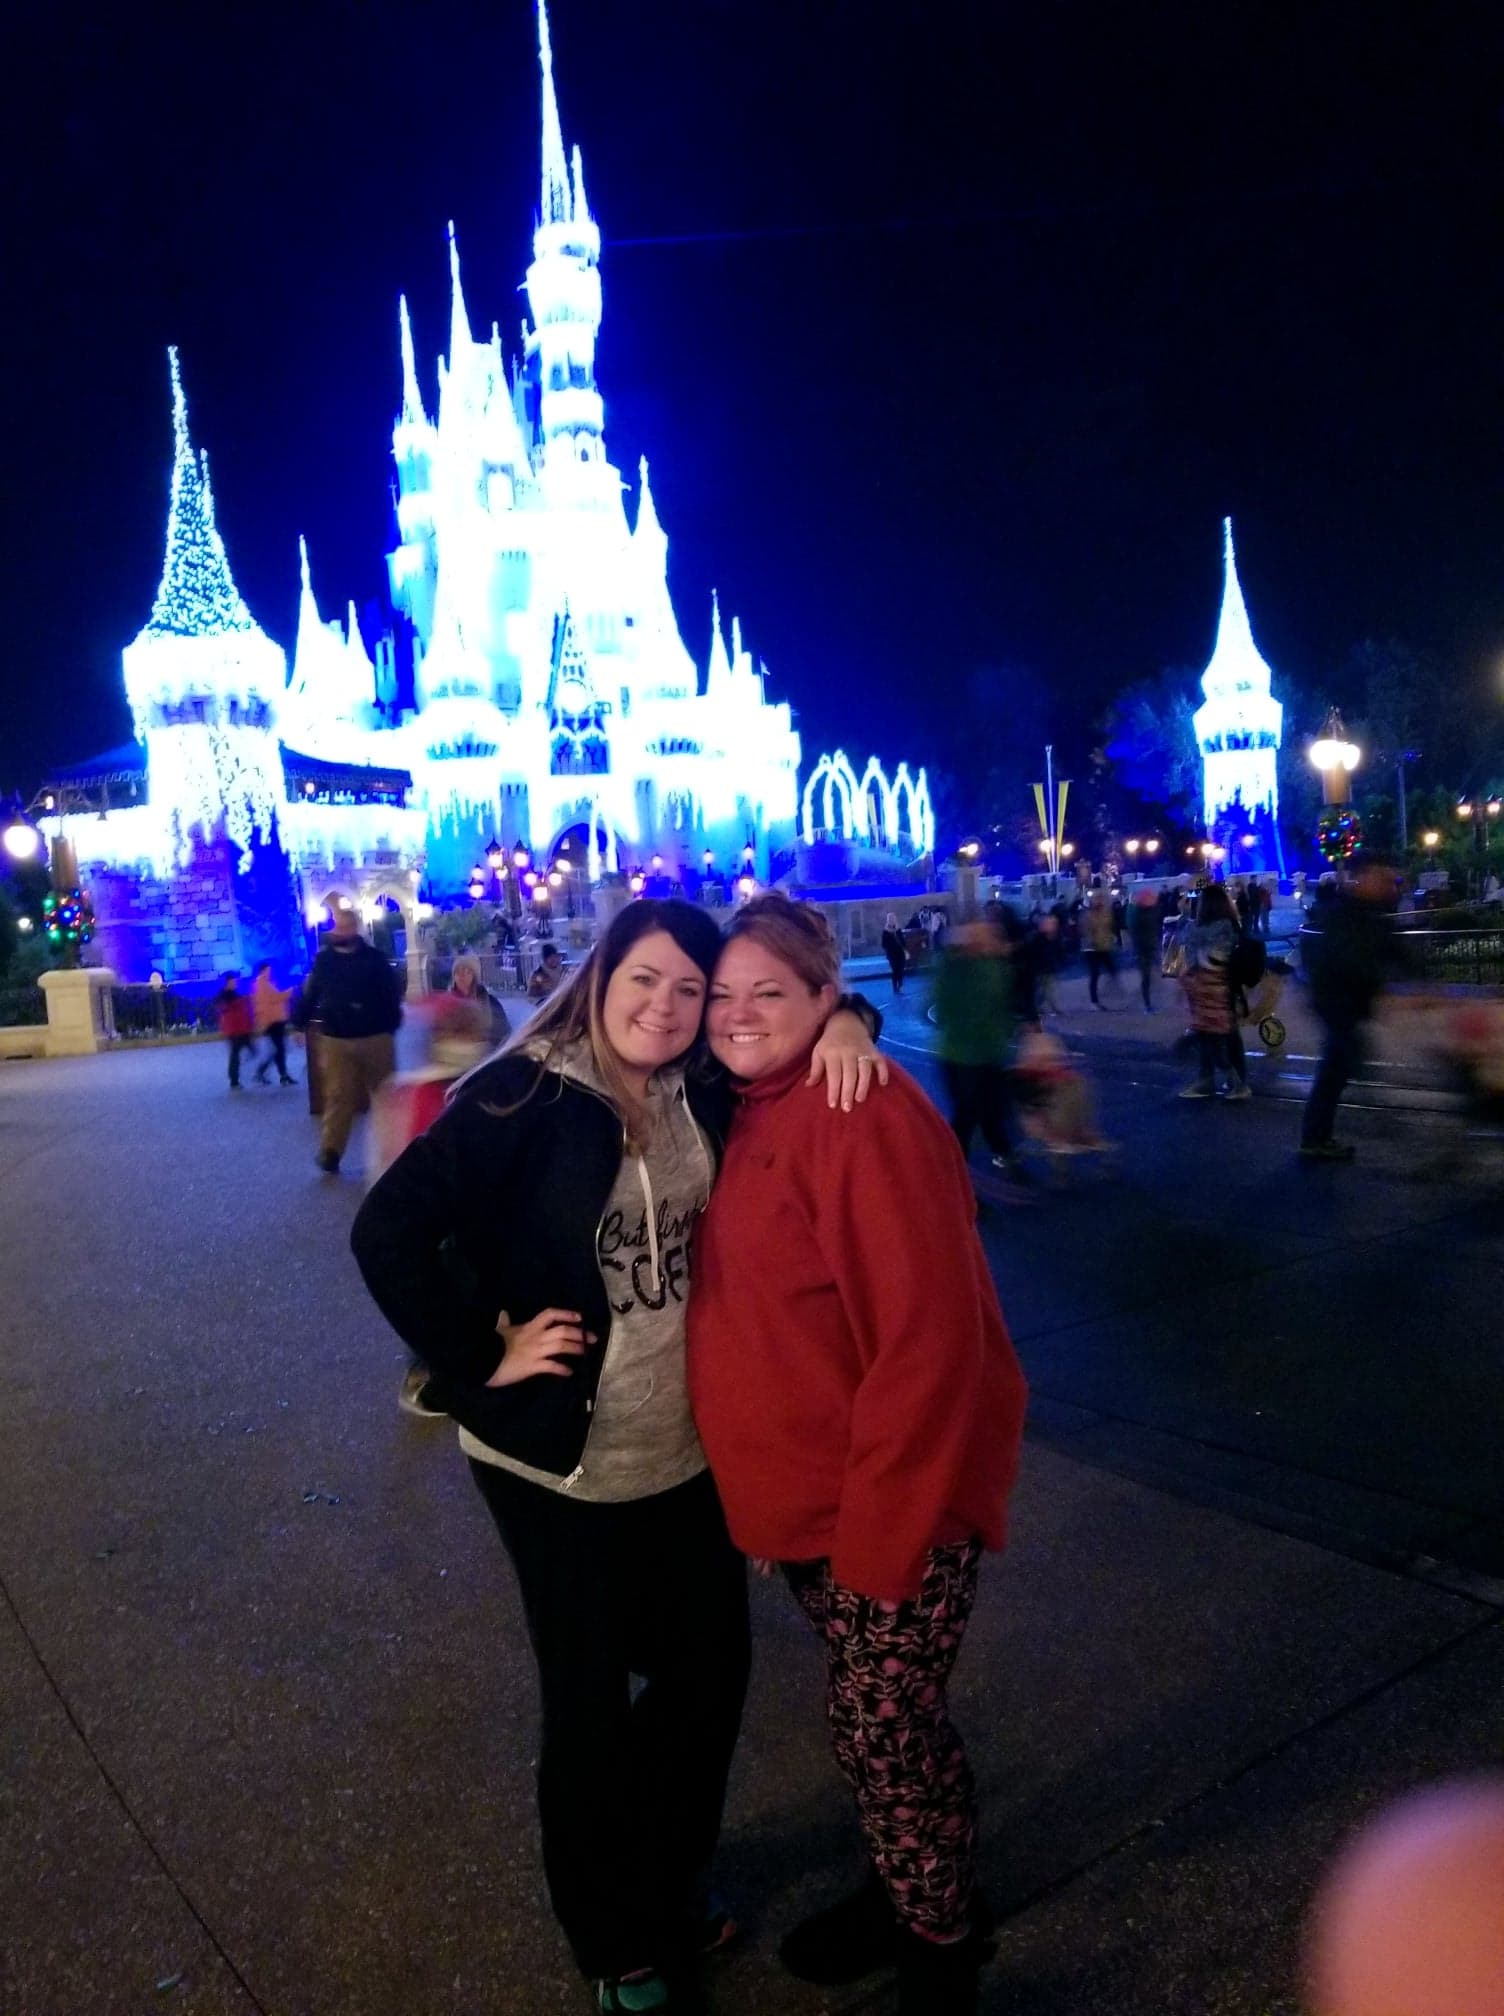 Walt Disney World Magic Kingdom Cinderella's Castle Christmas Decor in Orlando, FL